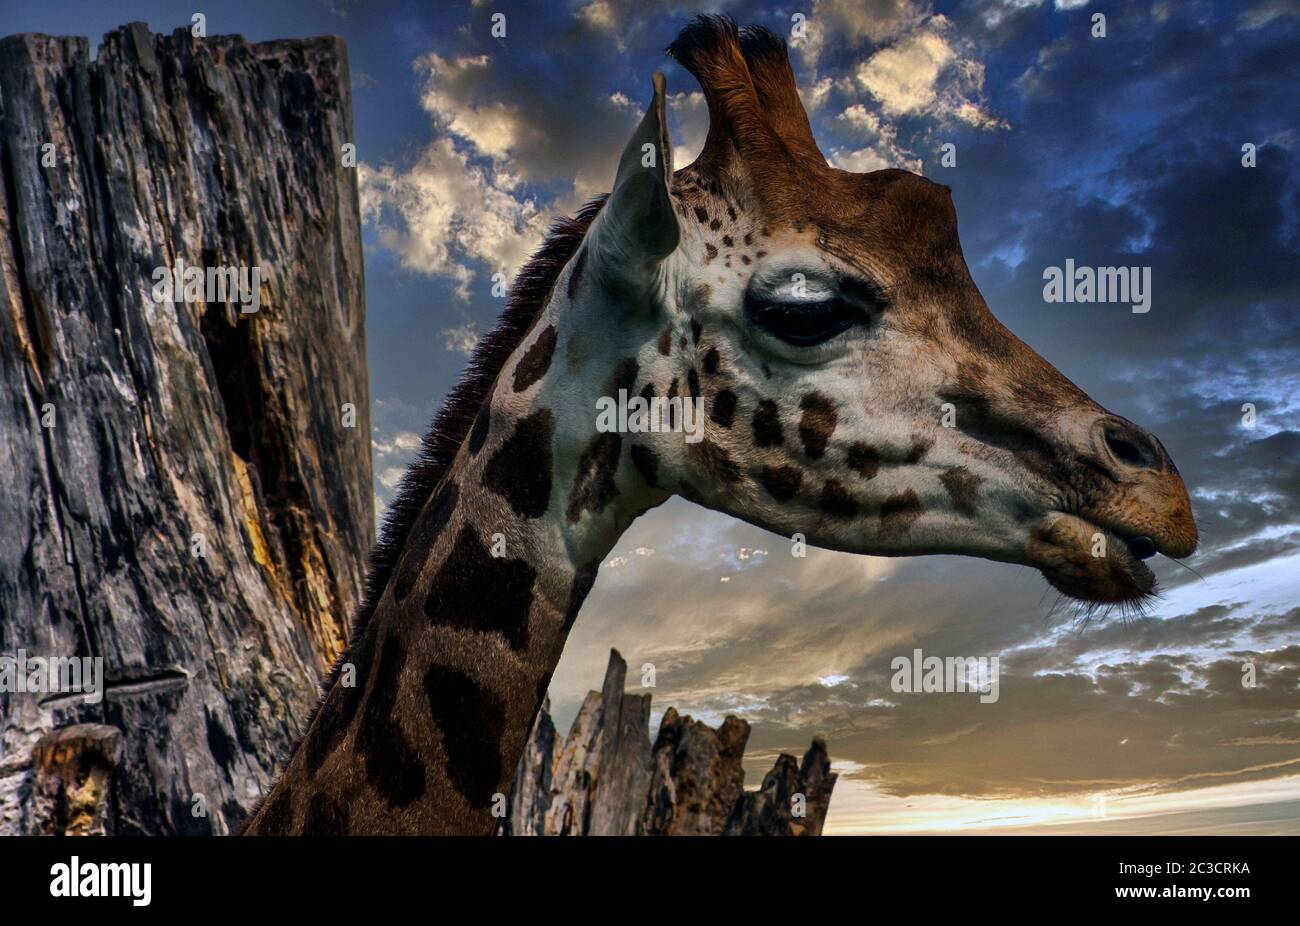 Giraffe (Giraffa) es un mamífero africano de artiodactyl, el animal terrestre vivo más alto y el rumiante más grande Foto de stock